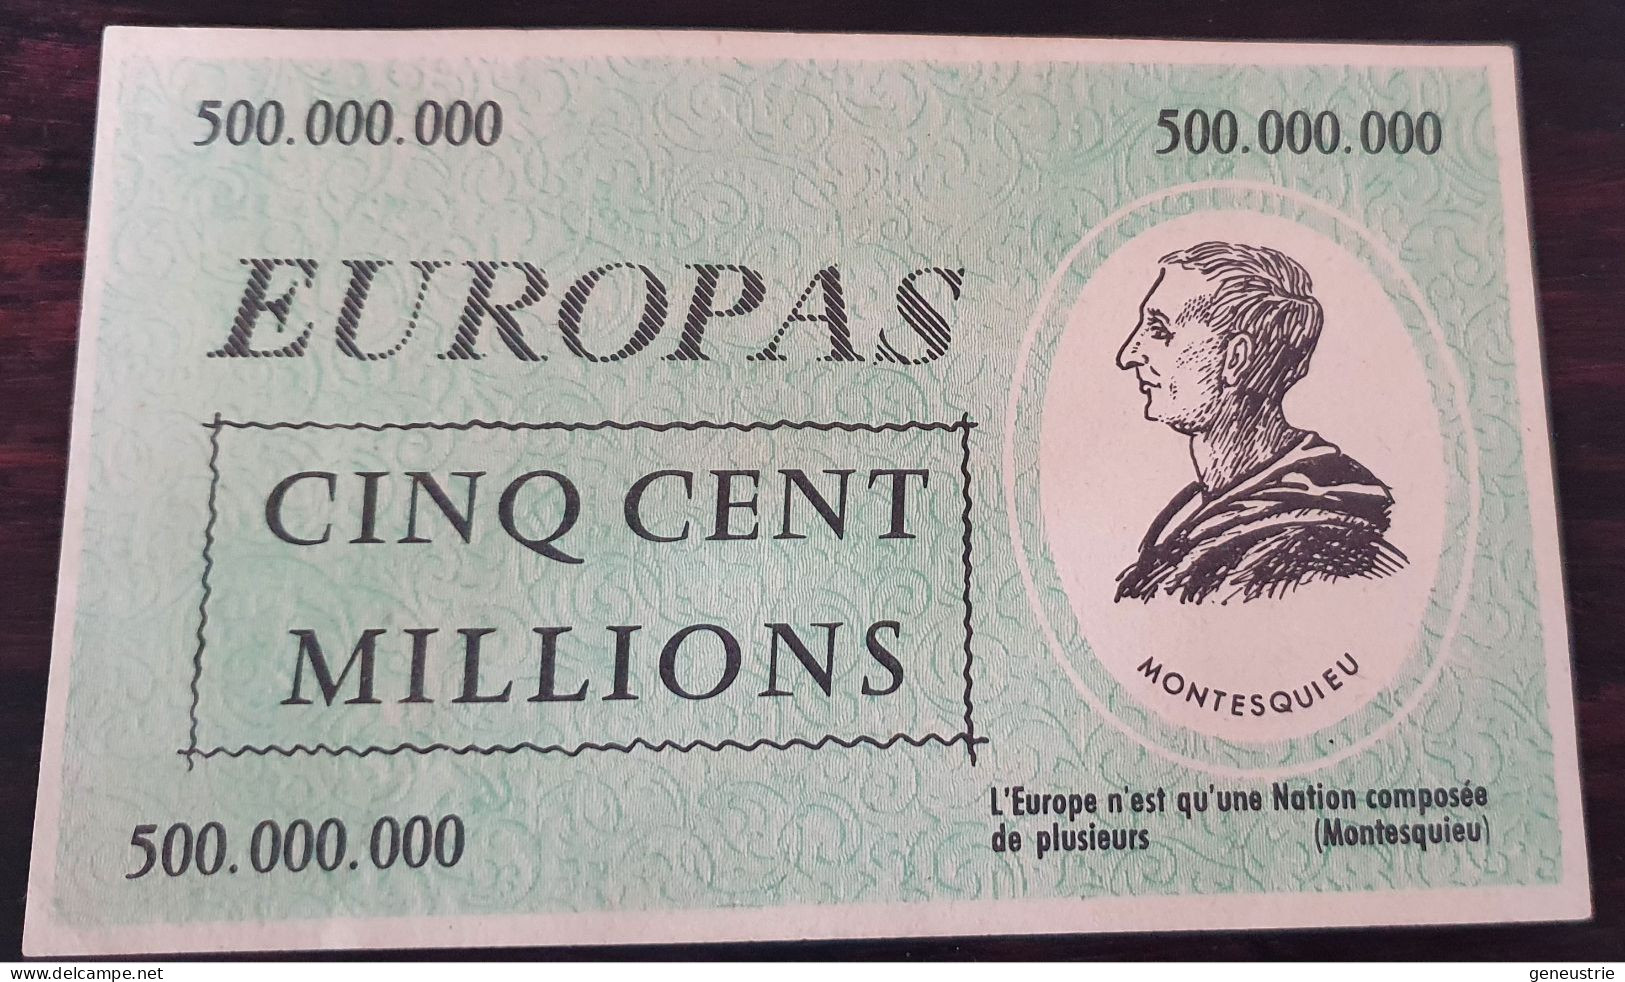 Série De 4 Billets Fantaisies (Billet De Jeu ?)  Années 50 "Europas" Fancy Bank Note - Ficción & Especímenes